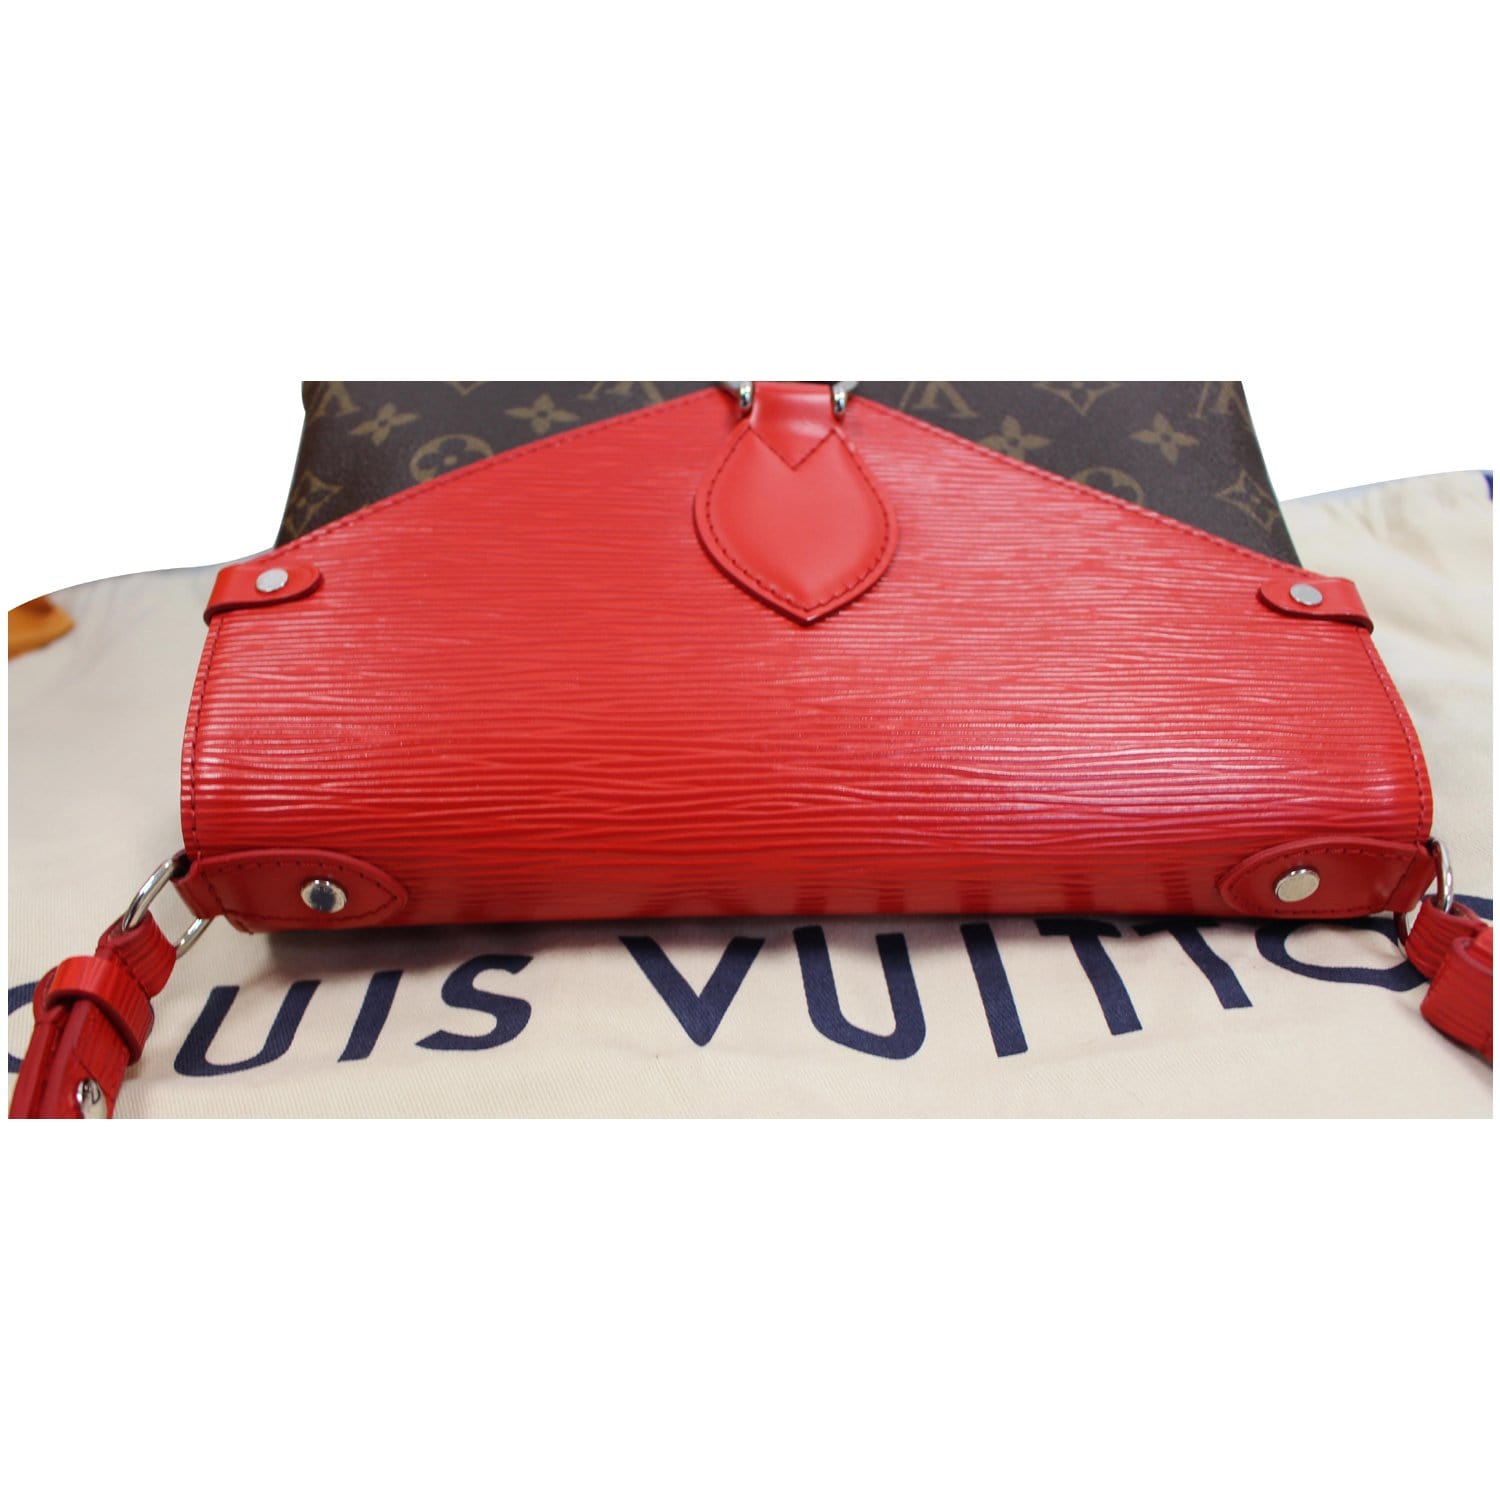 Louis Vuitton Saint Michel Bag